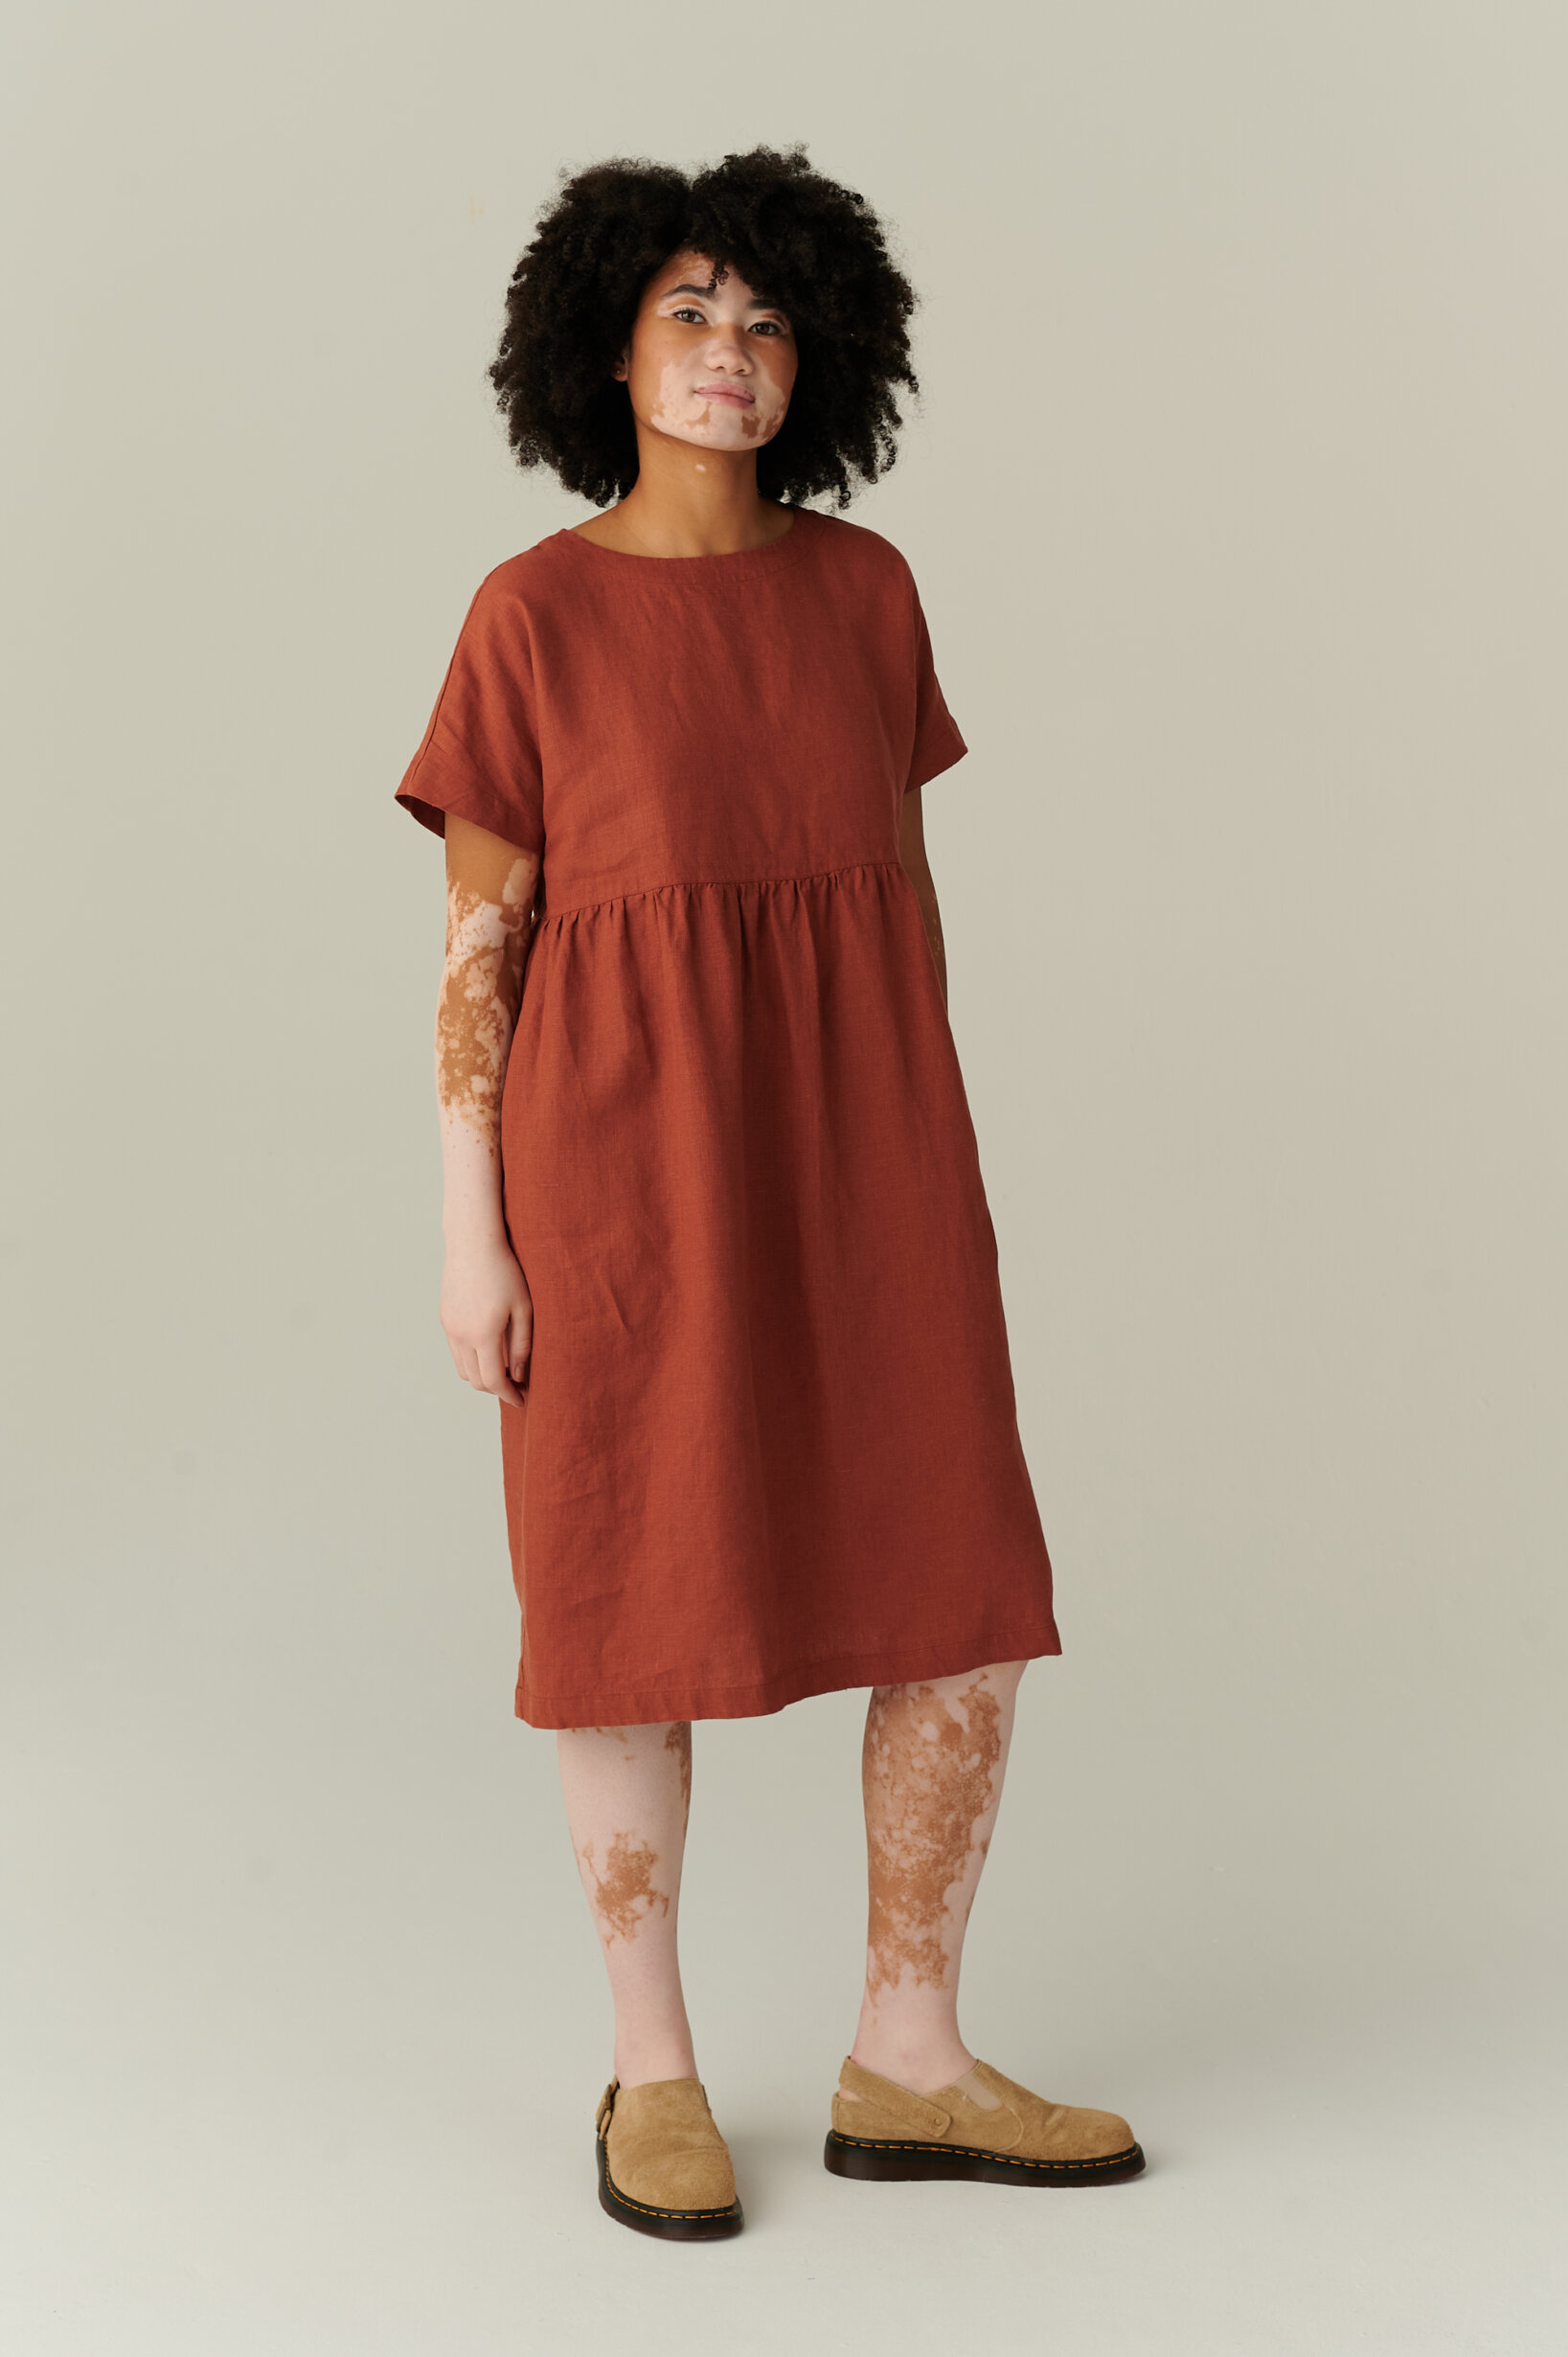 model wearing terracotta linen dress